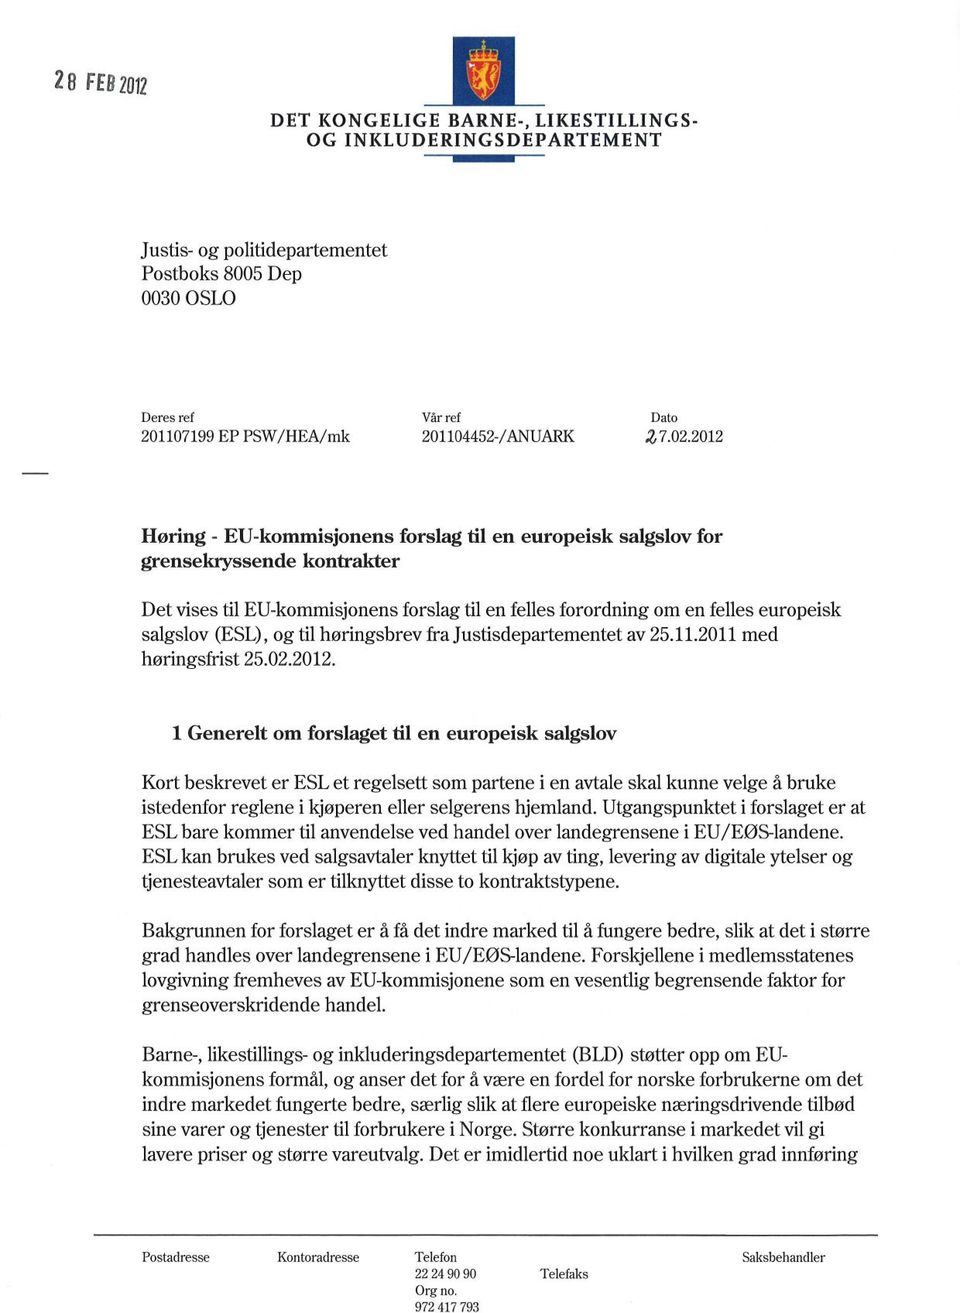 2012 Høring - EU-kommisjonens forslag til en europeisk salgslov for grensekryssende kontrakter Det vises til EU-kommisjonens forslag til en felles forordning om en felles europeisk salgslov (ESL), og